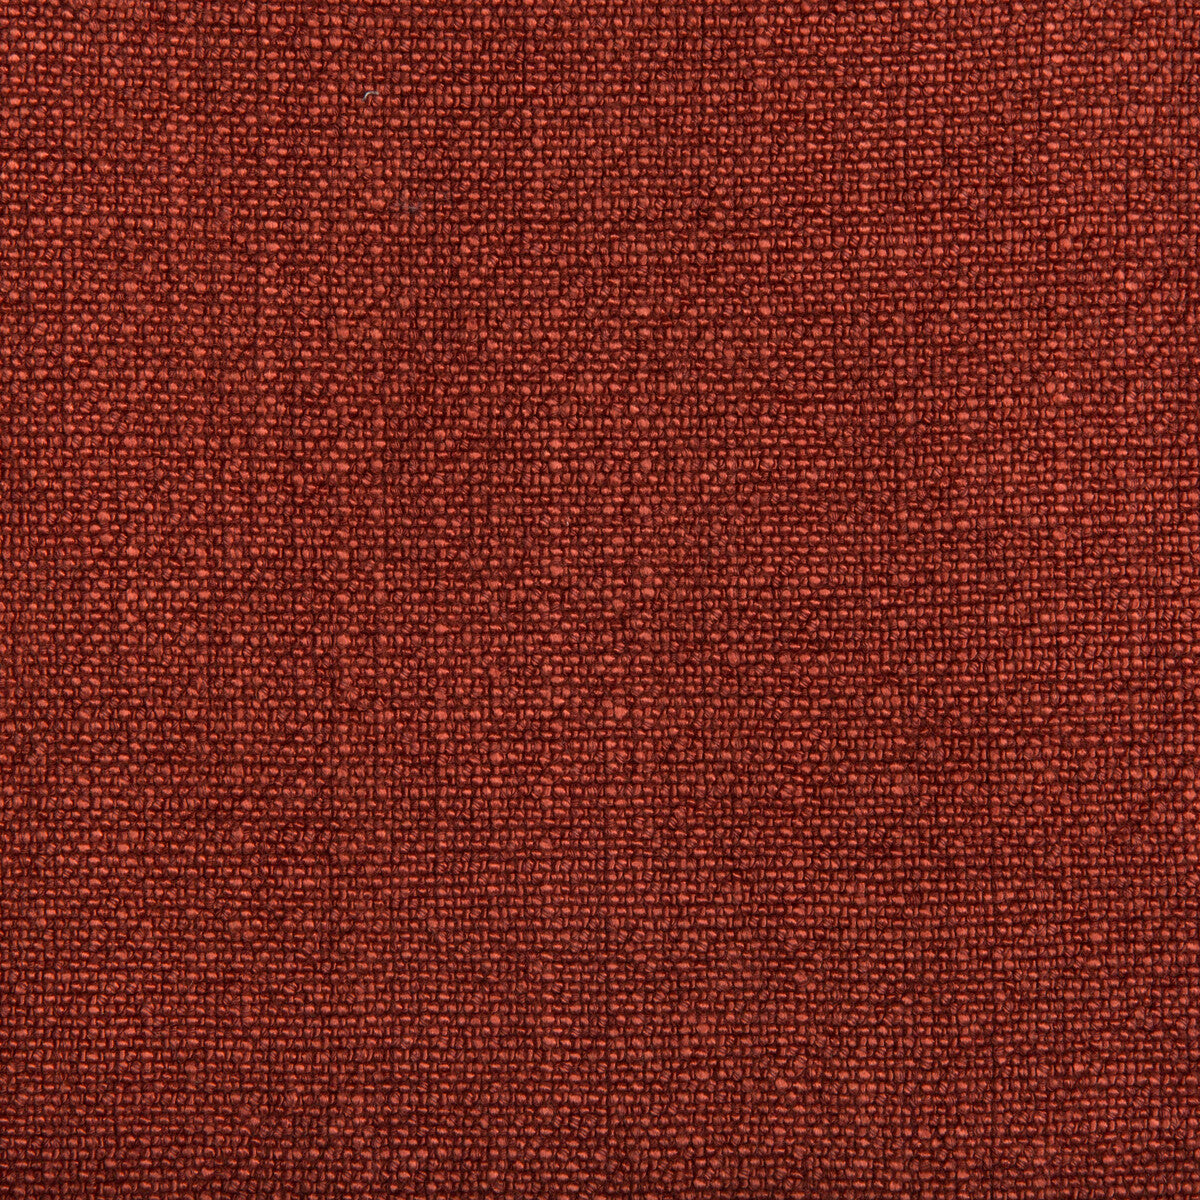 Kravet Basics fabric in 35189-24 color - pattern 35189.24.0 - by Kravet Basics